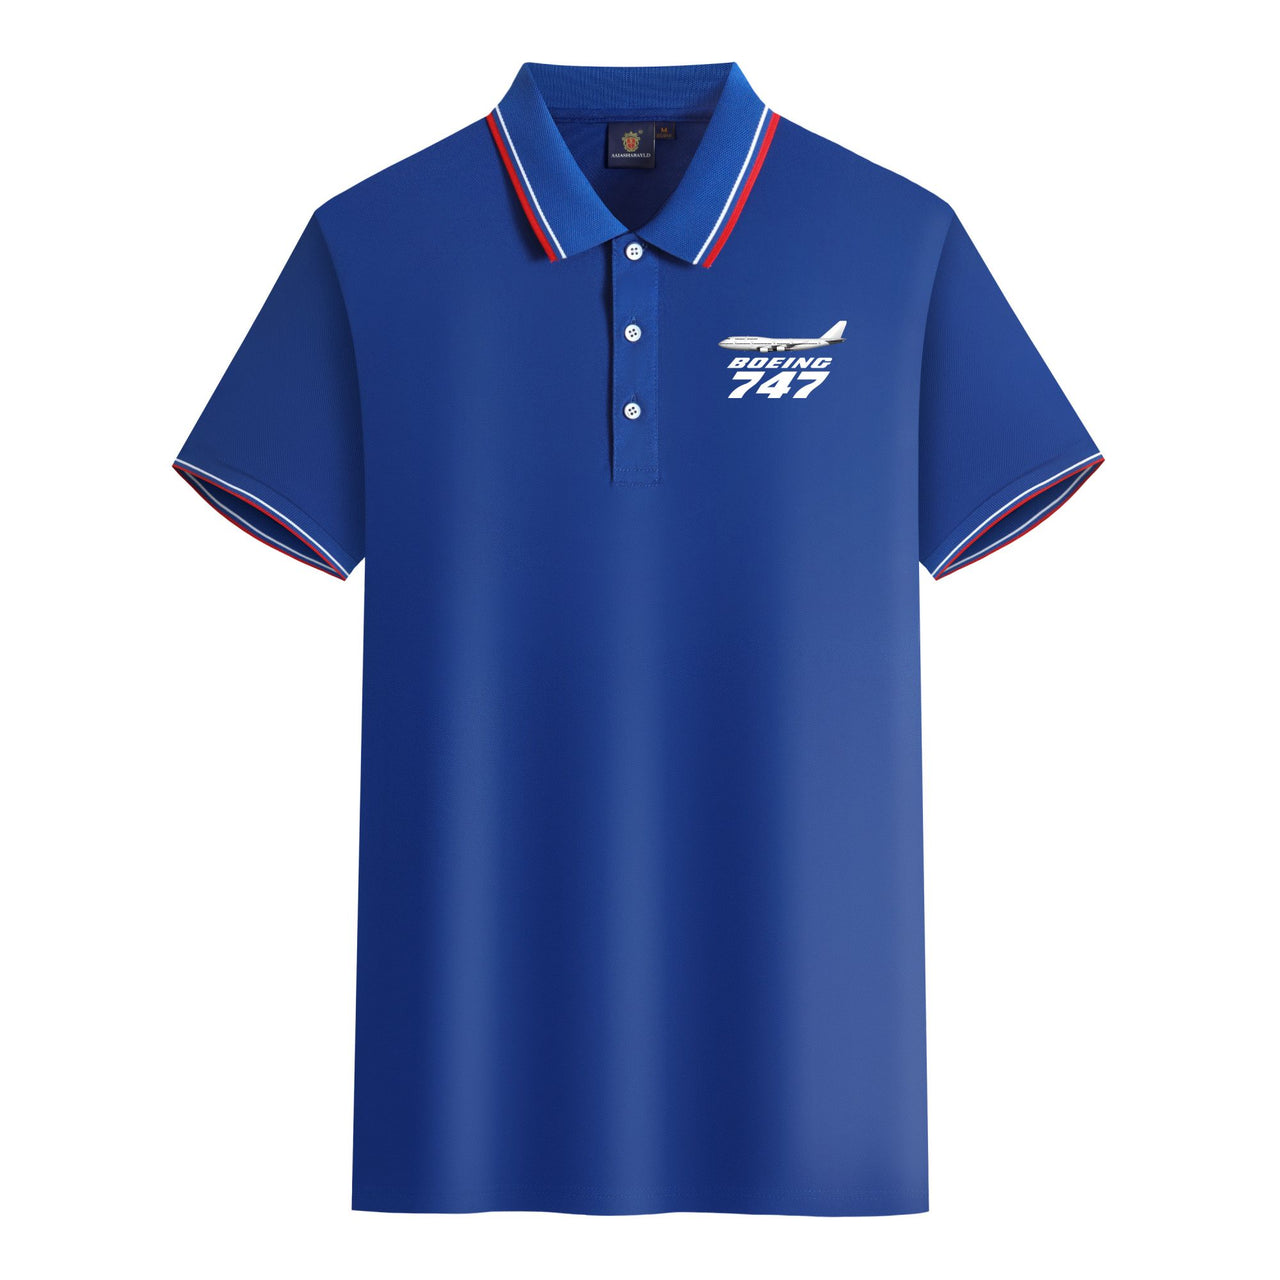 The Boeing 747 Designed Stylish Polo T-Shirts